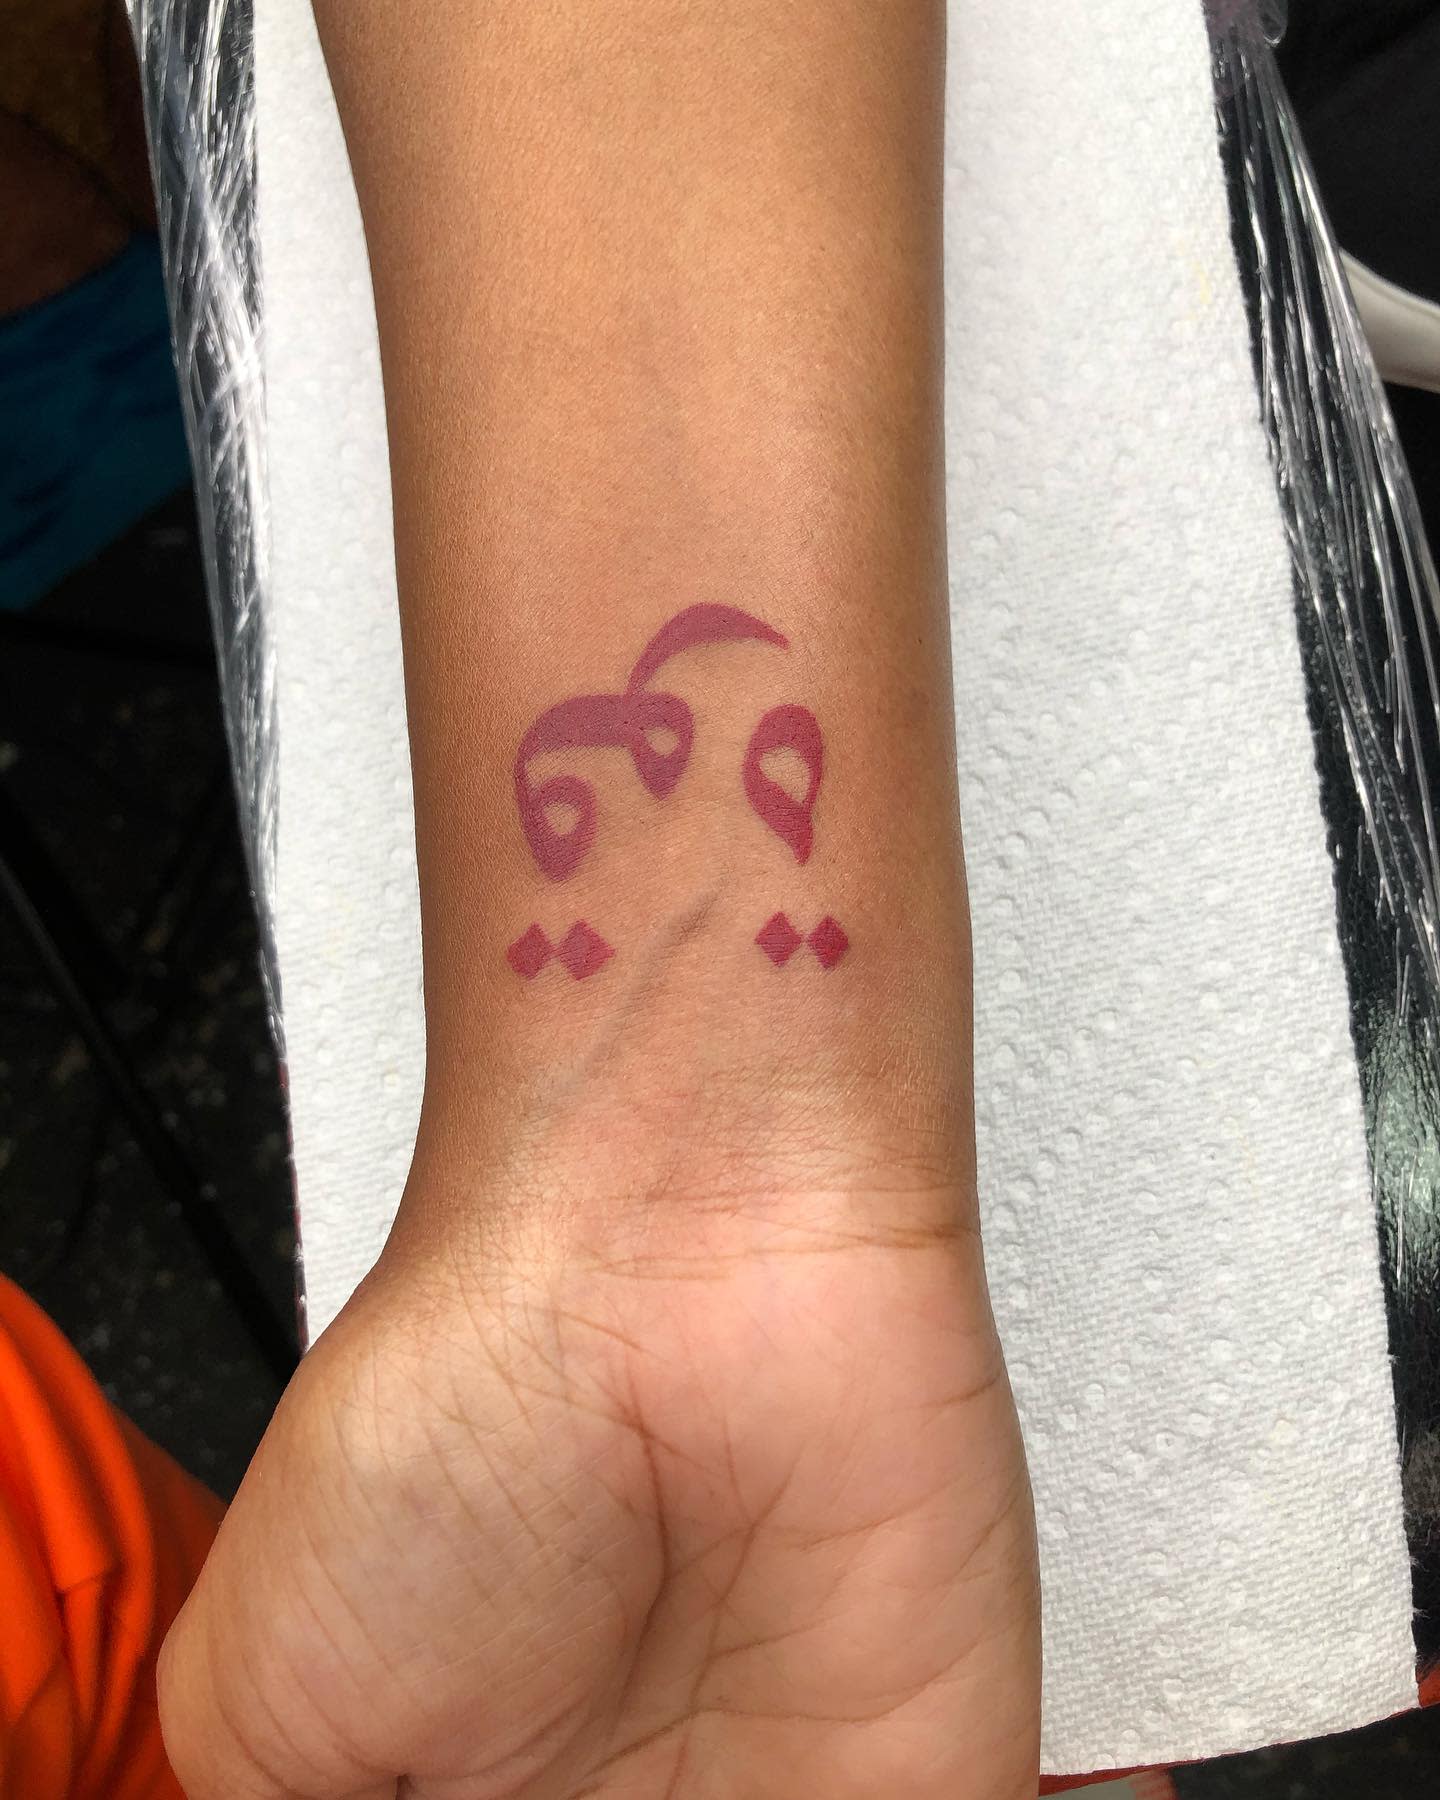 18 Arabic Tattoos On Hand  Tattoo Designs  TattoosBagcom